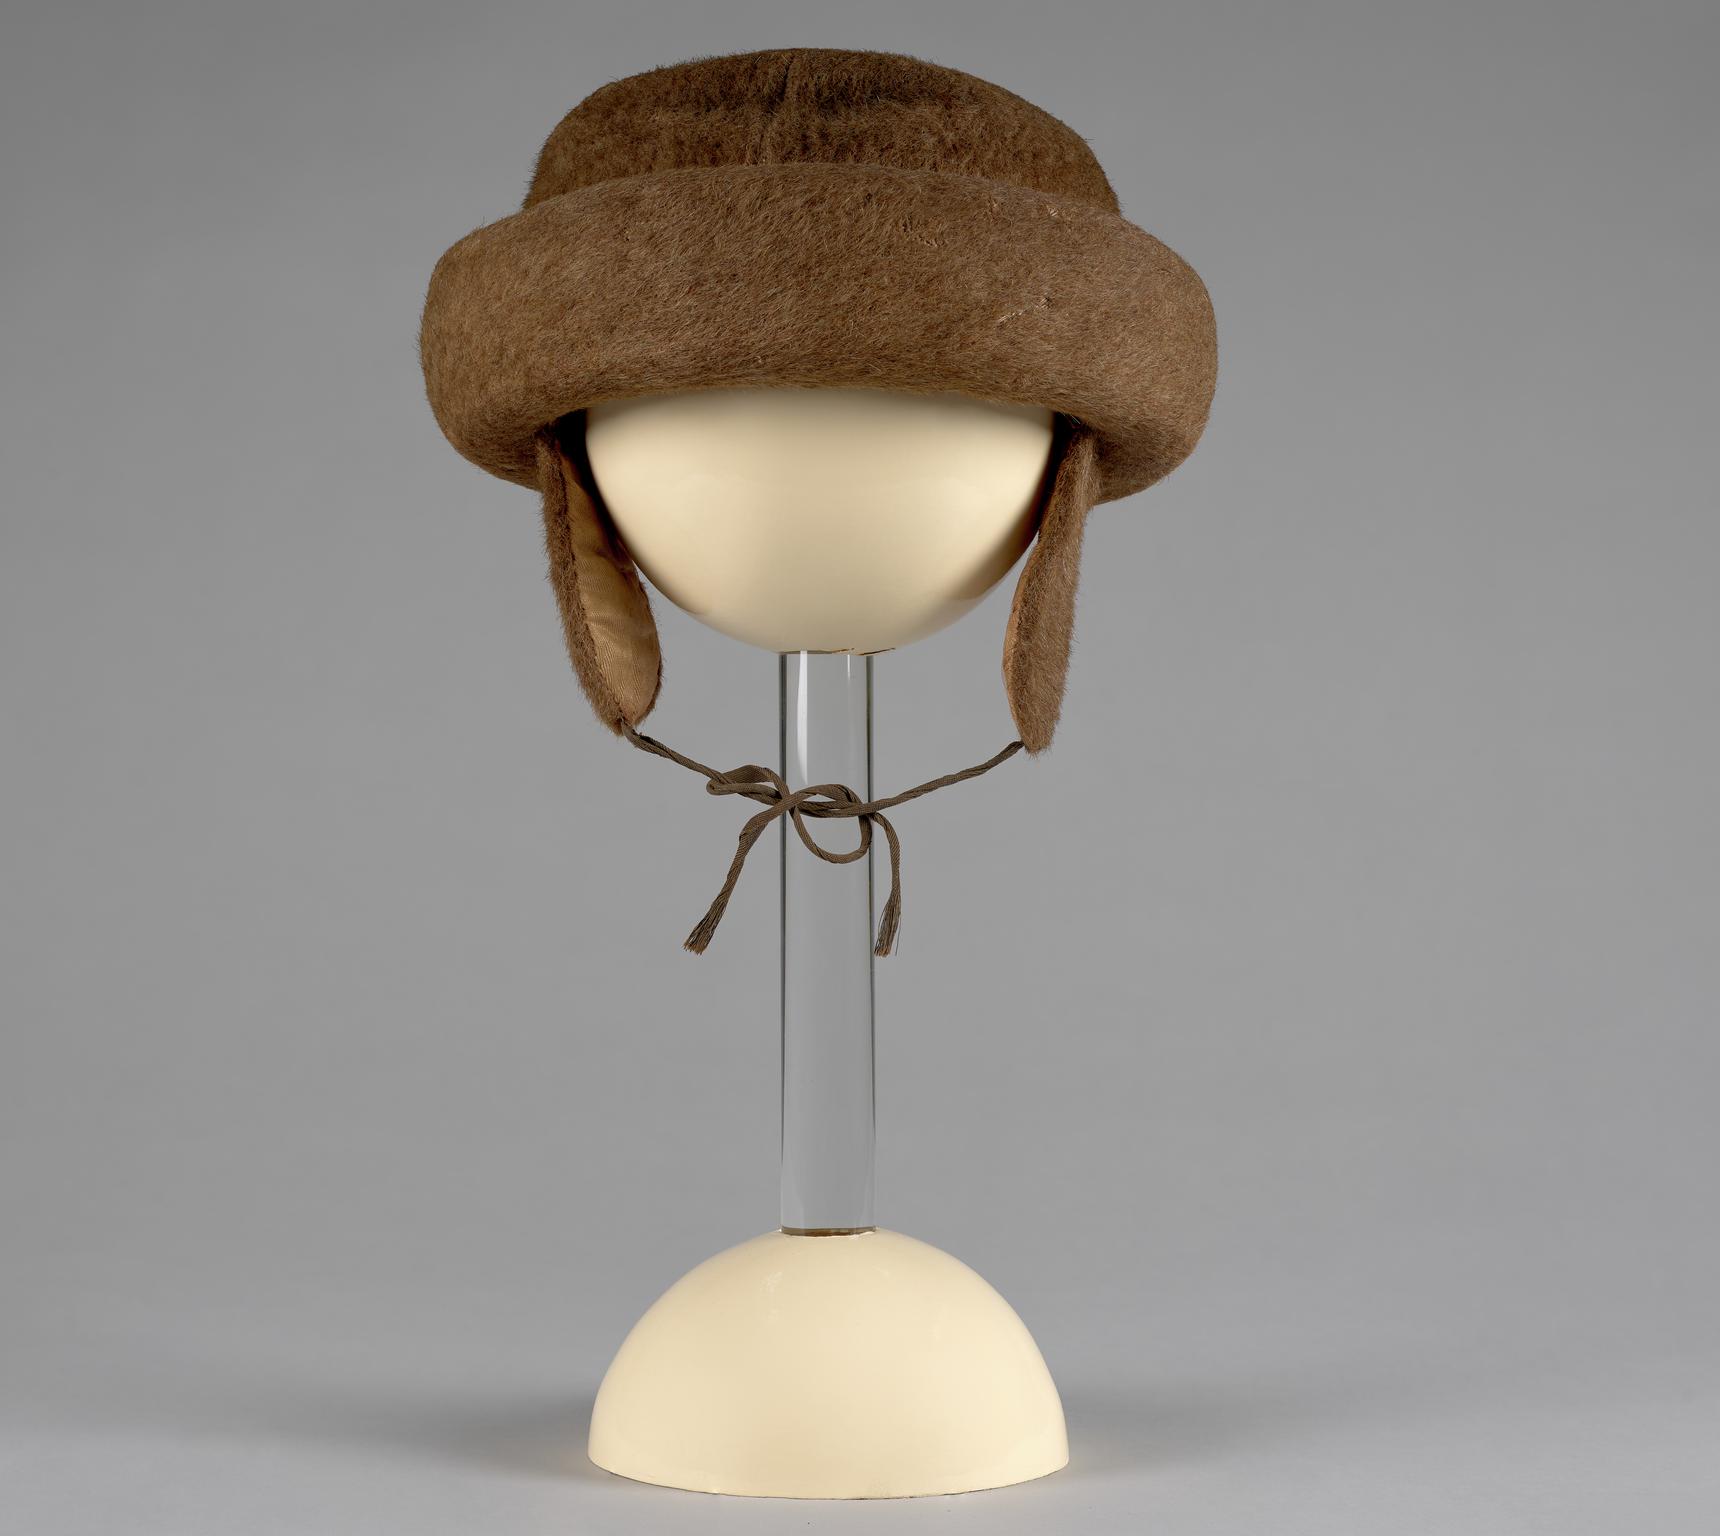 Fur hat worn by Charles Horace Watkins